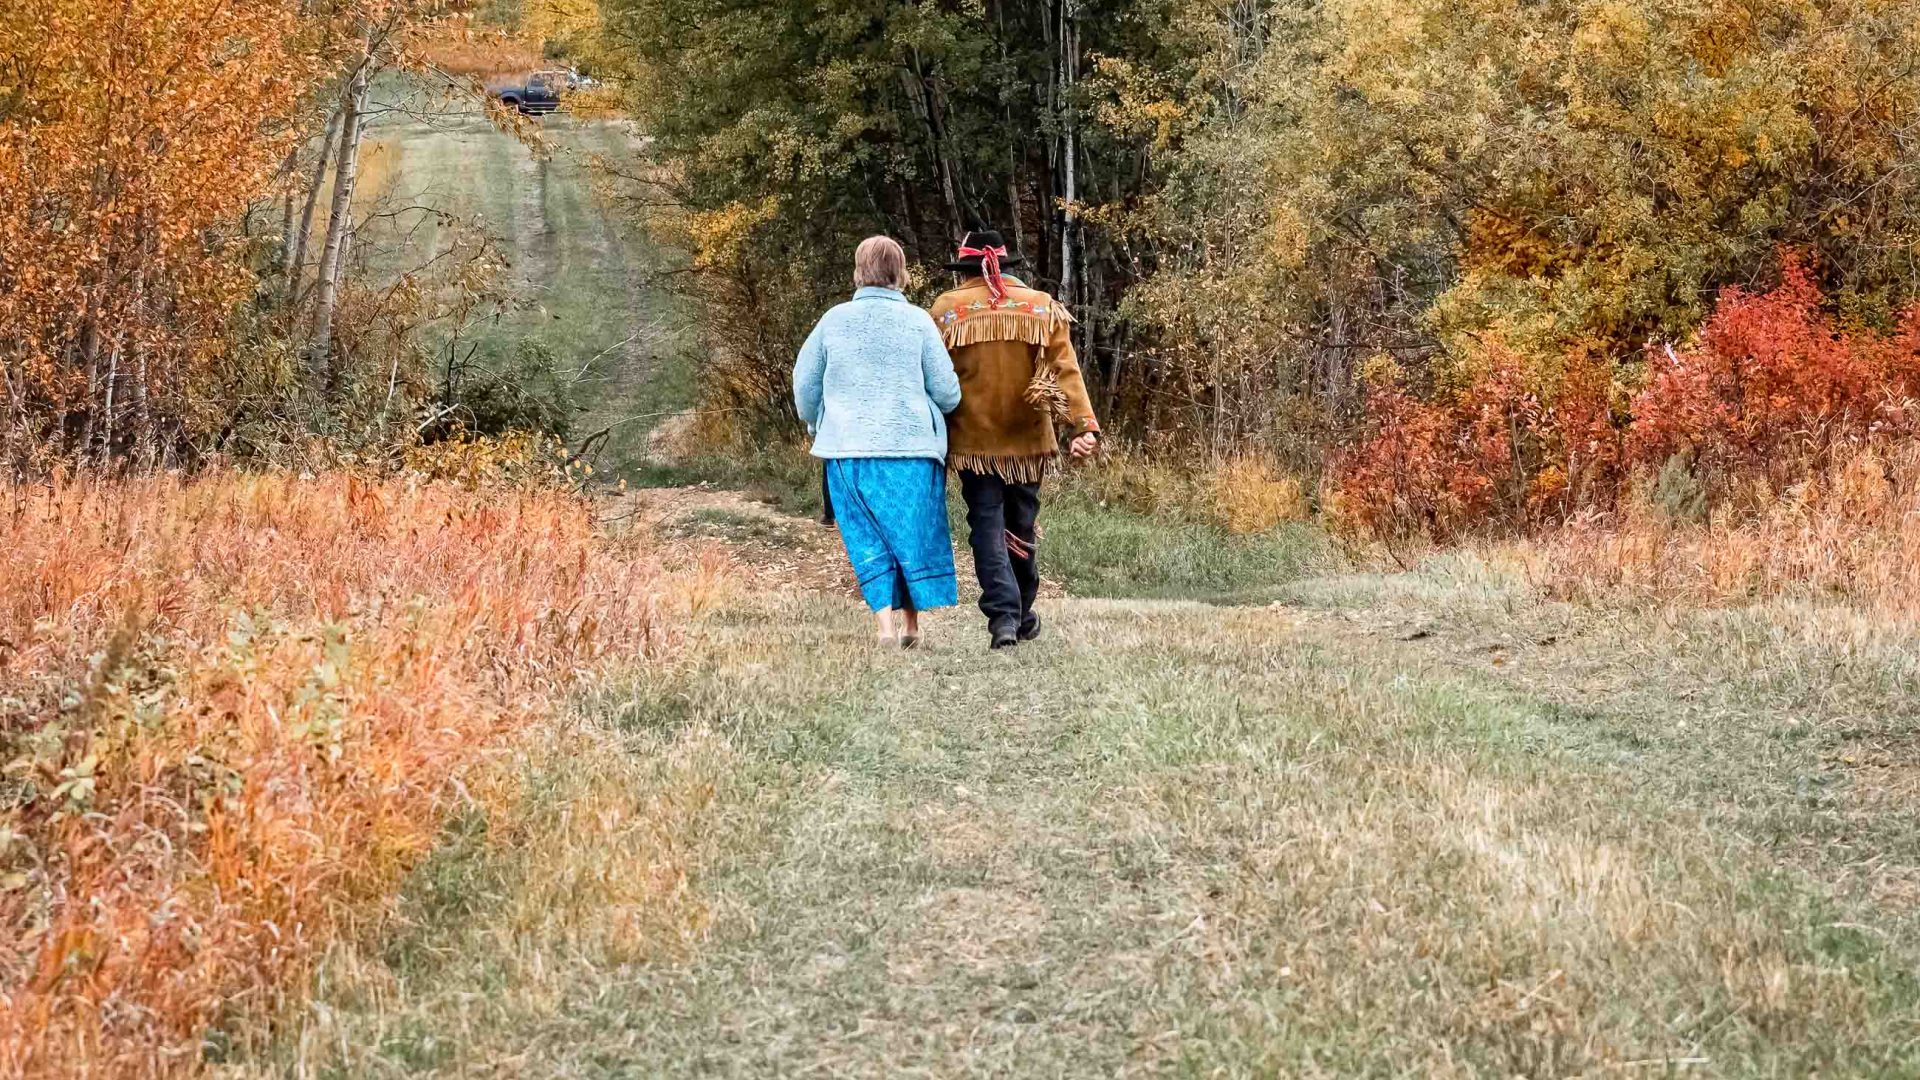 Two people walk across a grassy paddock.